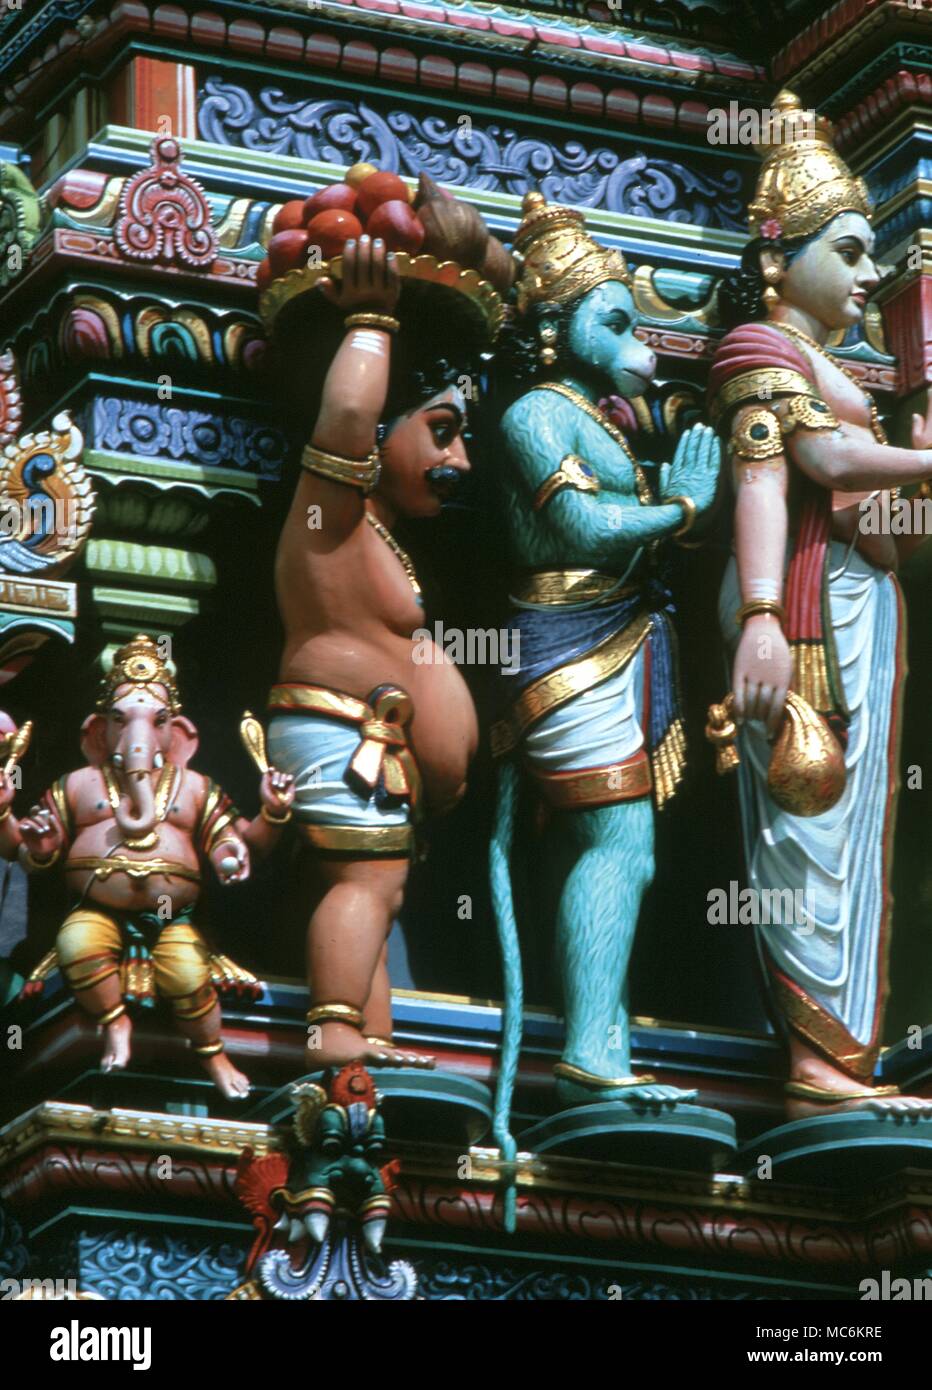 La mythologie Hindoue. Ganesa, dieu à tête d'éléphant de la sagesse avec le nain, Vamana et Hanuman, le dieu singe. Temple Hindou de Singapour Banque D'Images